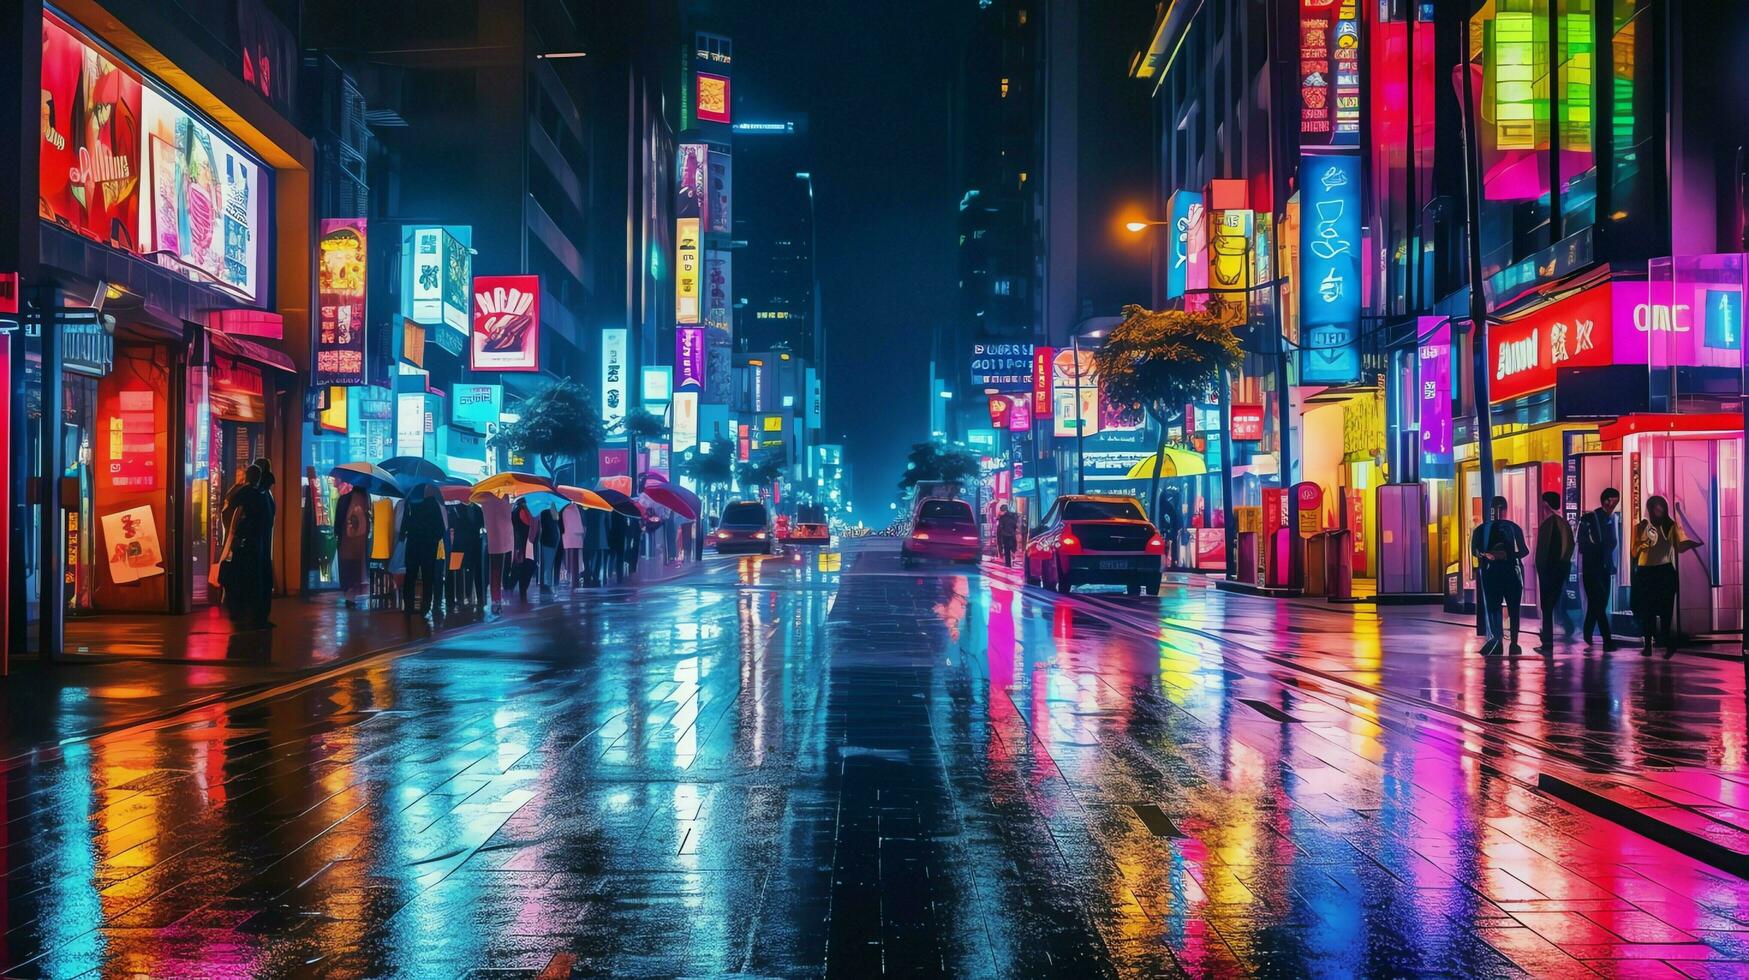 noche escena de después lluvia ciudad en cyberpunk estilo, futurista nostálgico años 80, años 90 neón luces vibrante colores, fotorrealista horizontal ilustración. ai generado foto